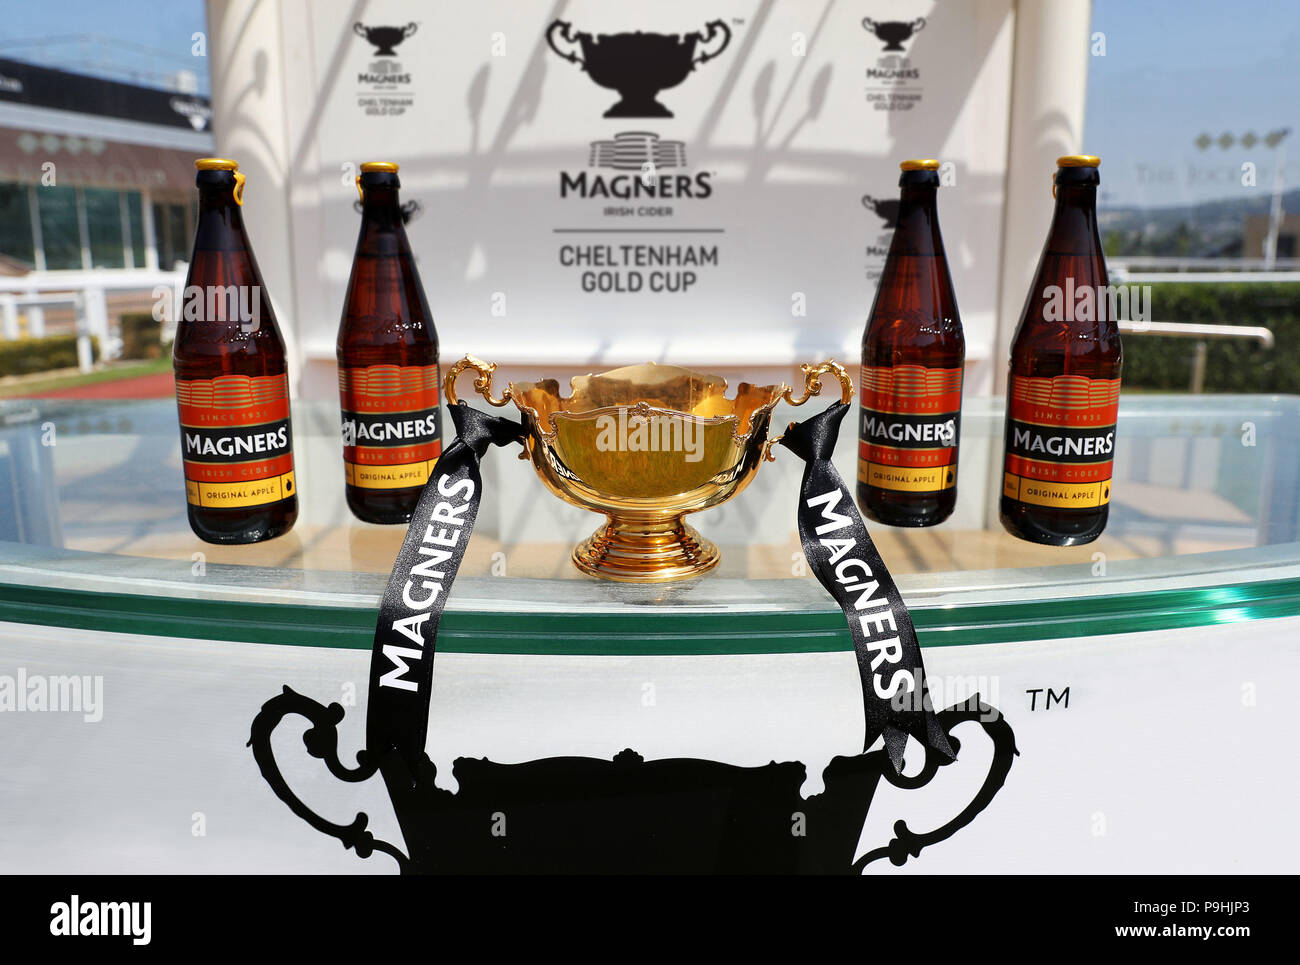 Una vista general de la Cheltenham Gold Cup. Sidra irlandesa Magners ha  presentado hoy, 18 de julio de 2018, se dio a conocer como el patrocinador  exclusivo de la más prestigiosa carrera